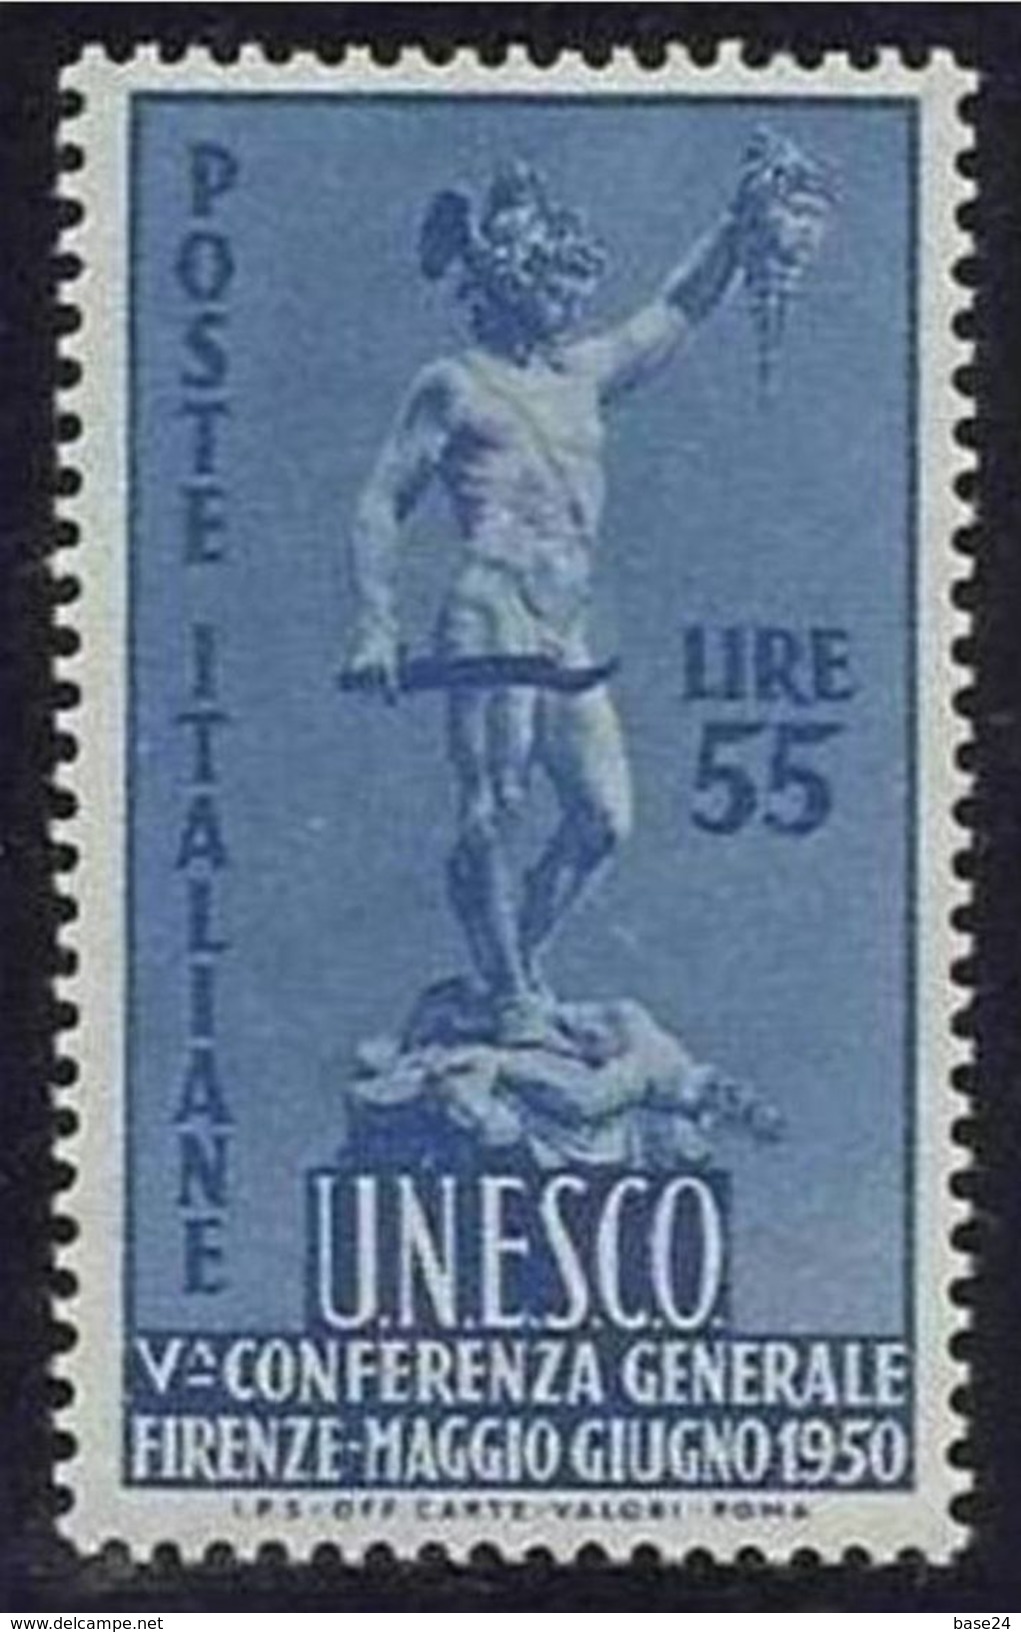 1950 Italia Italy Repubblica UNESCO 55 Lire Azzurro MNH** U.N.E.S.C.O. - UNESCO